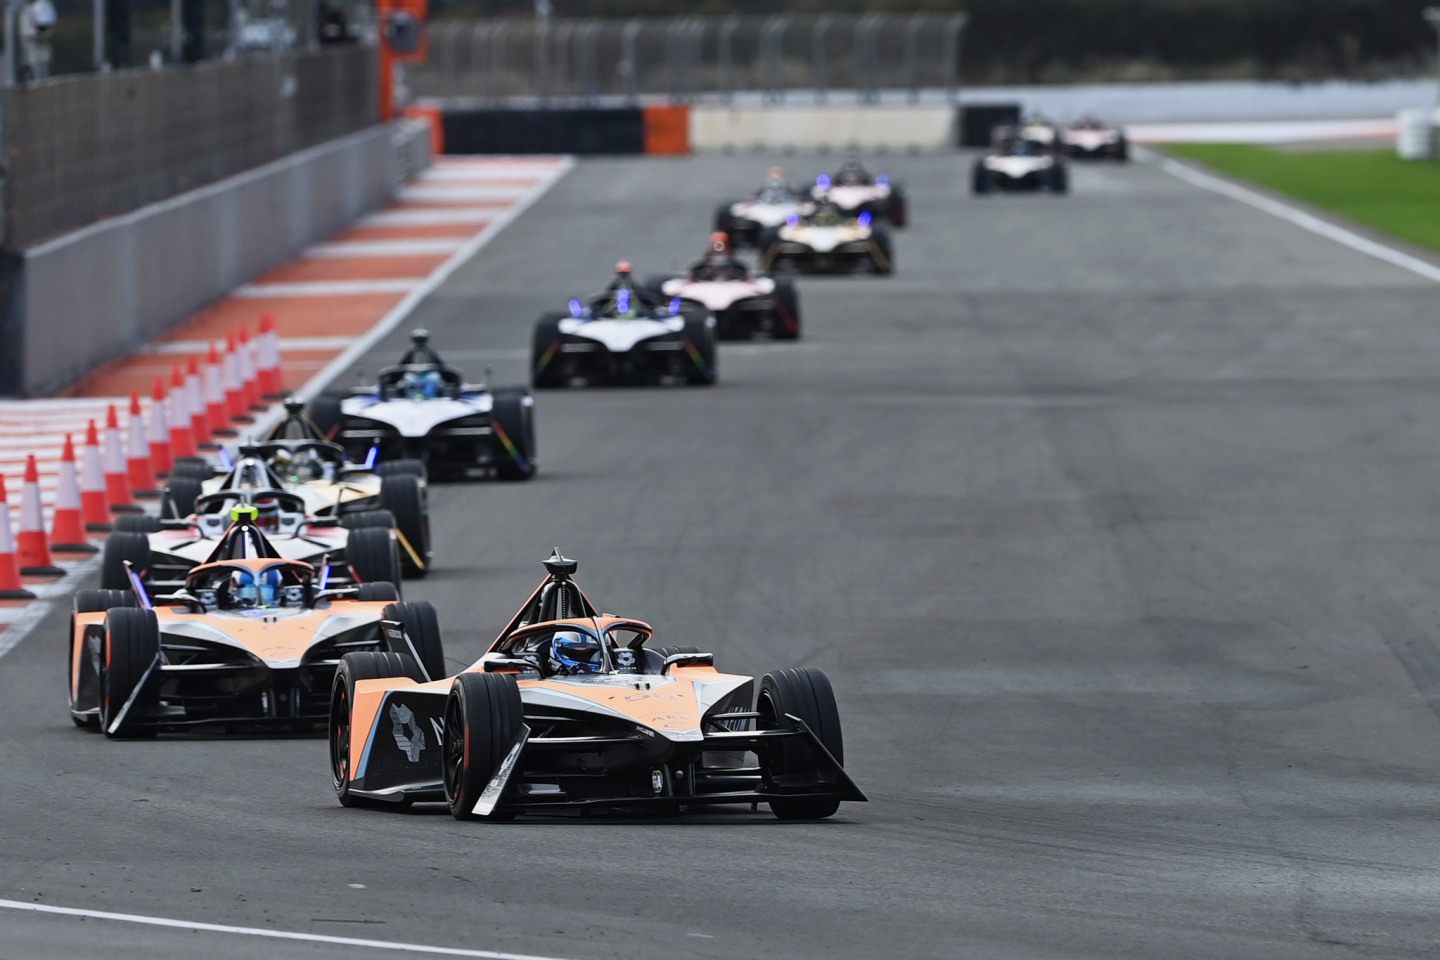 Стационарных автодром в новом сезоне Формулы Е будет минимум © Sam Bagnall/Formula E